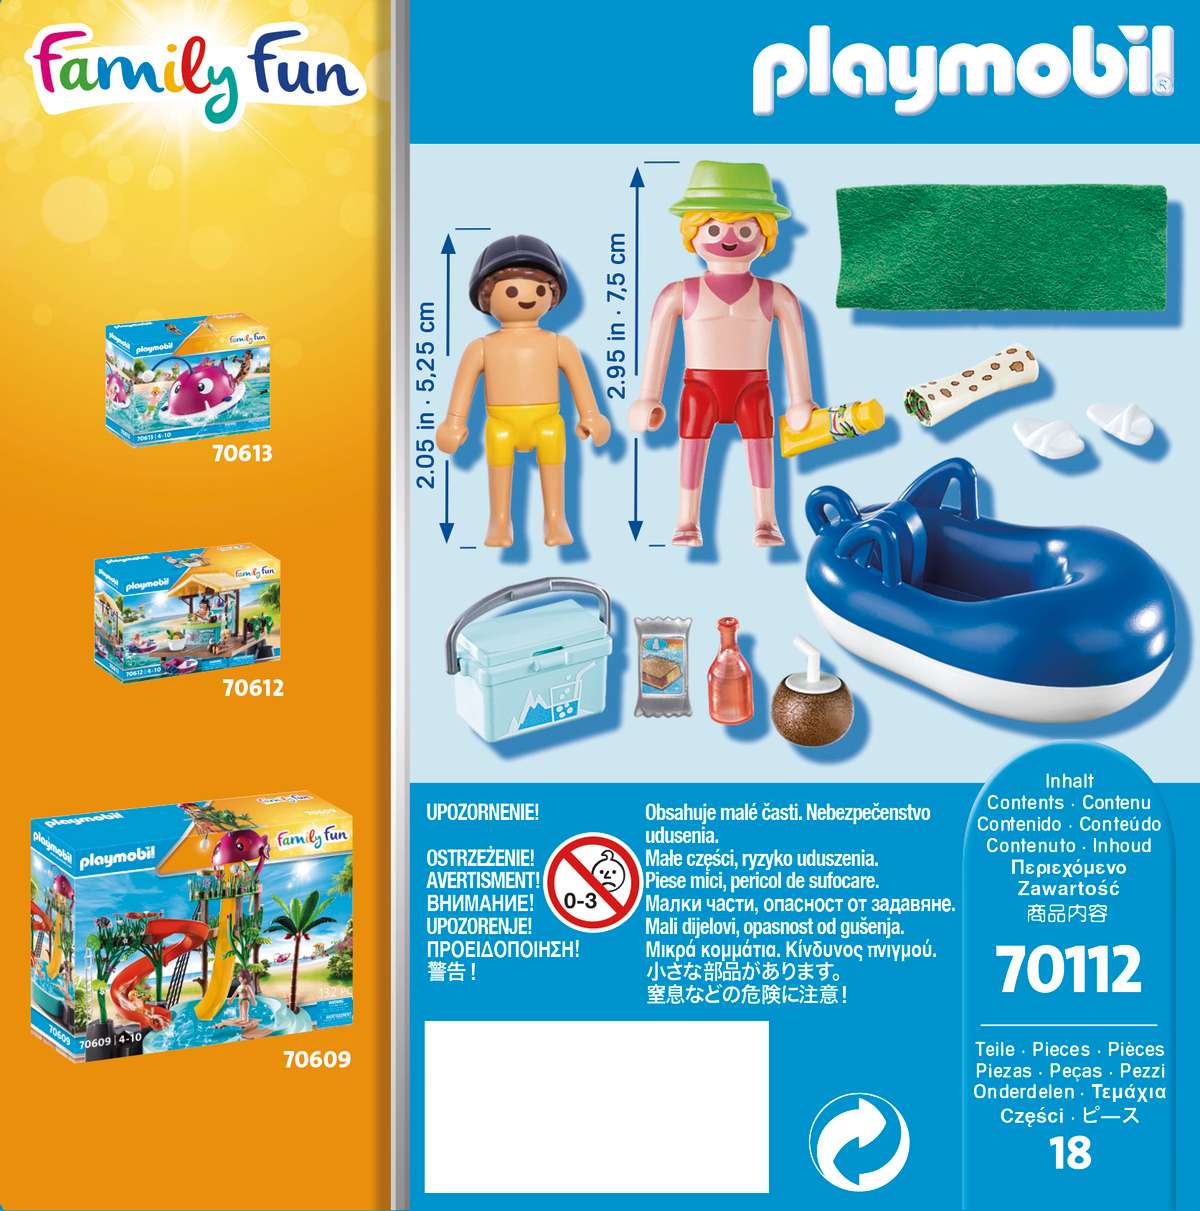 Playmobil Family Fun Παραθεριστής με Φουσκωτή Κουλούρα 70112 - Playmobil, Playmobil Family Fun